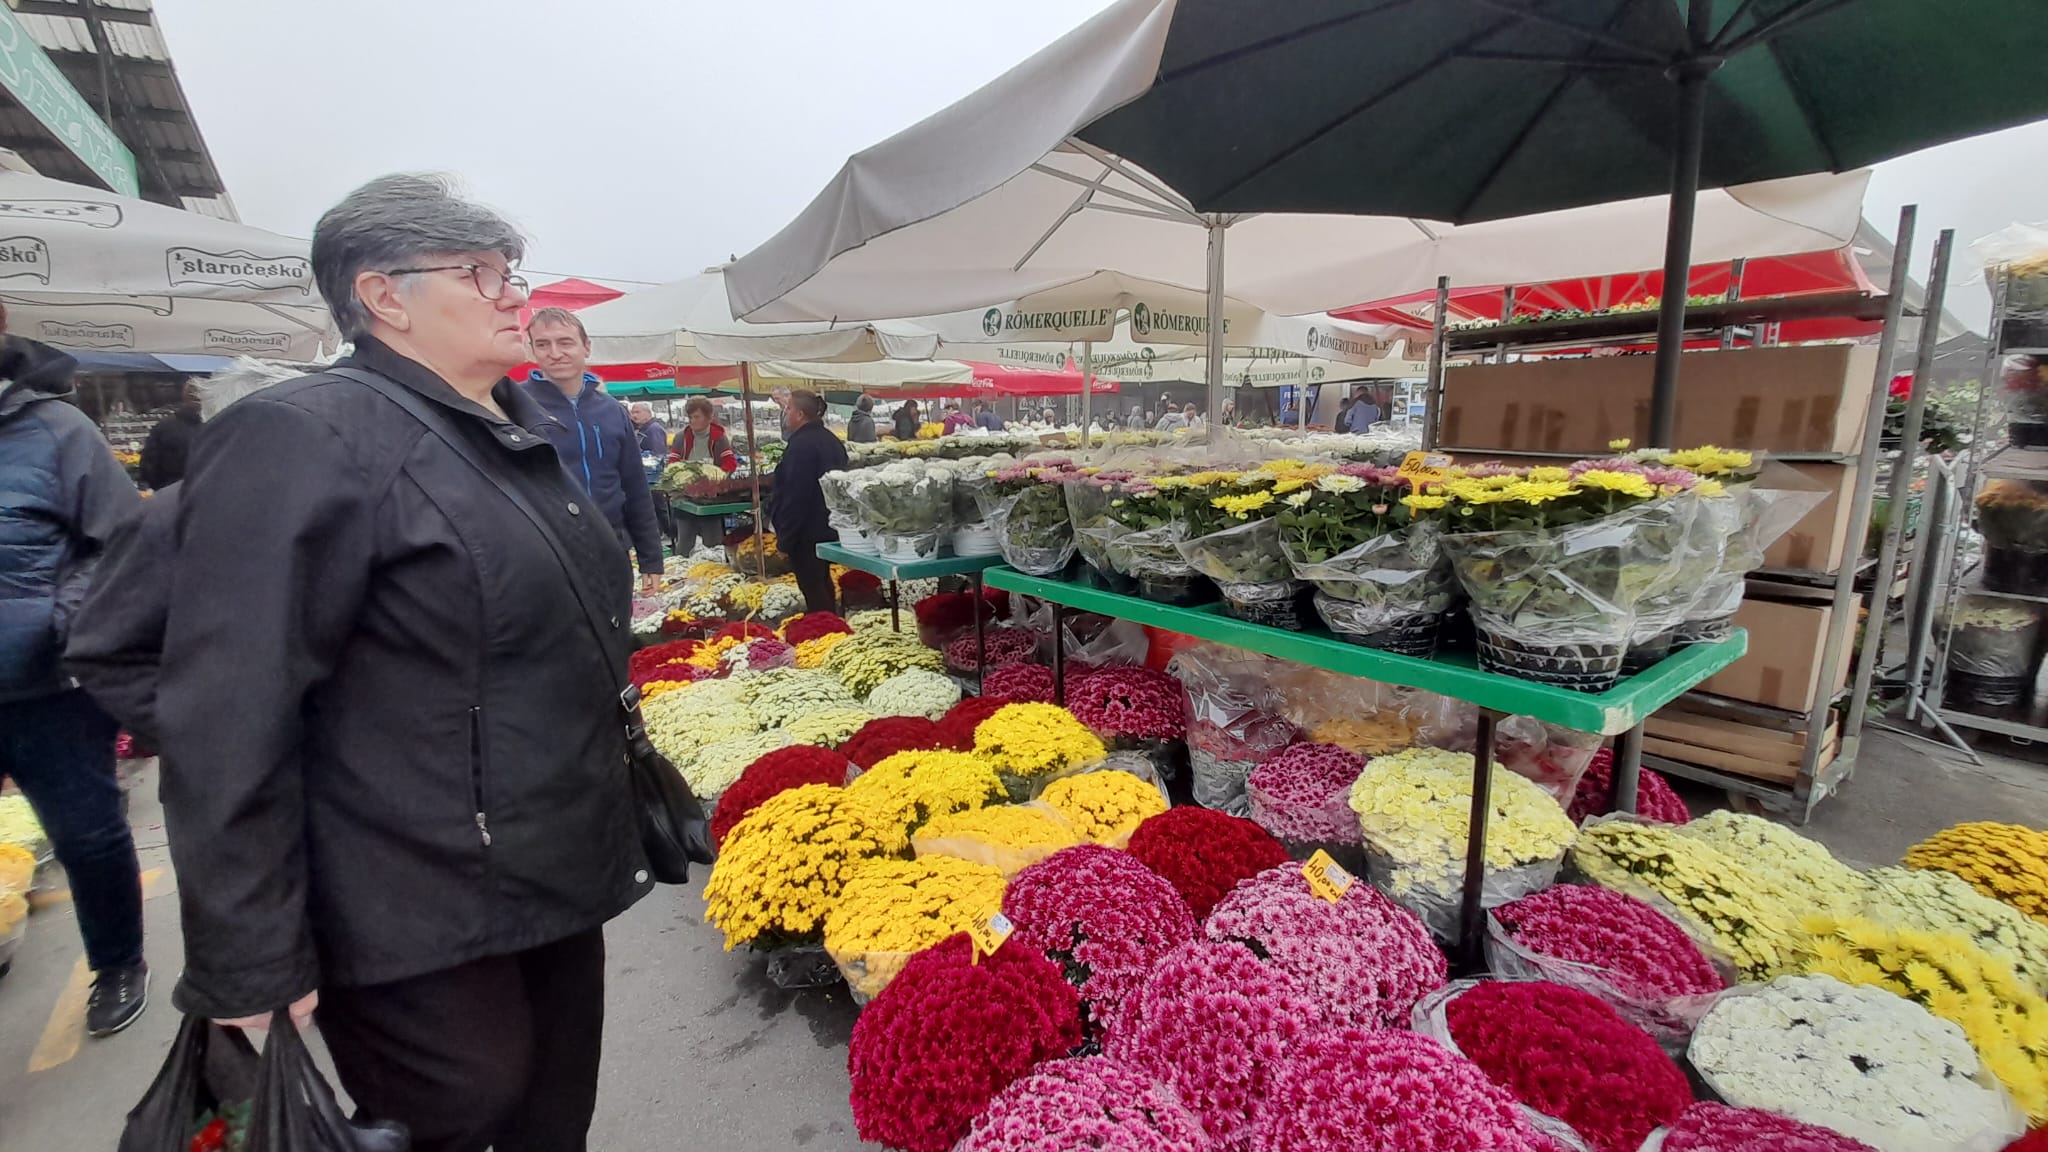 [FOTO] Bjelovarski plac je krcat, a unatoč poskupljenjima cvijeće se kupuje na veliko